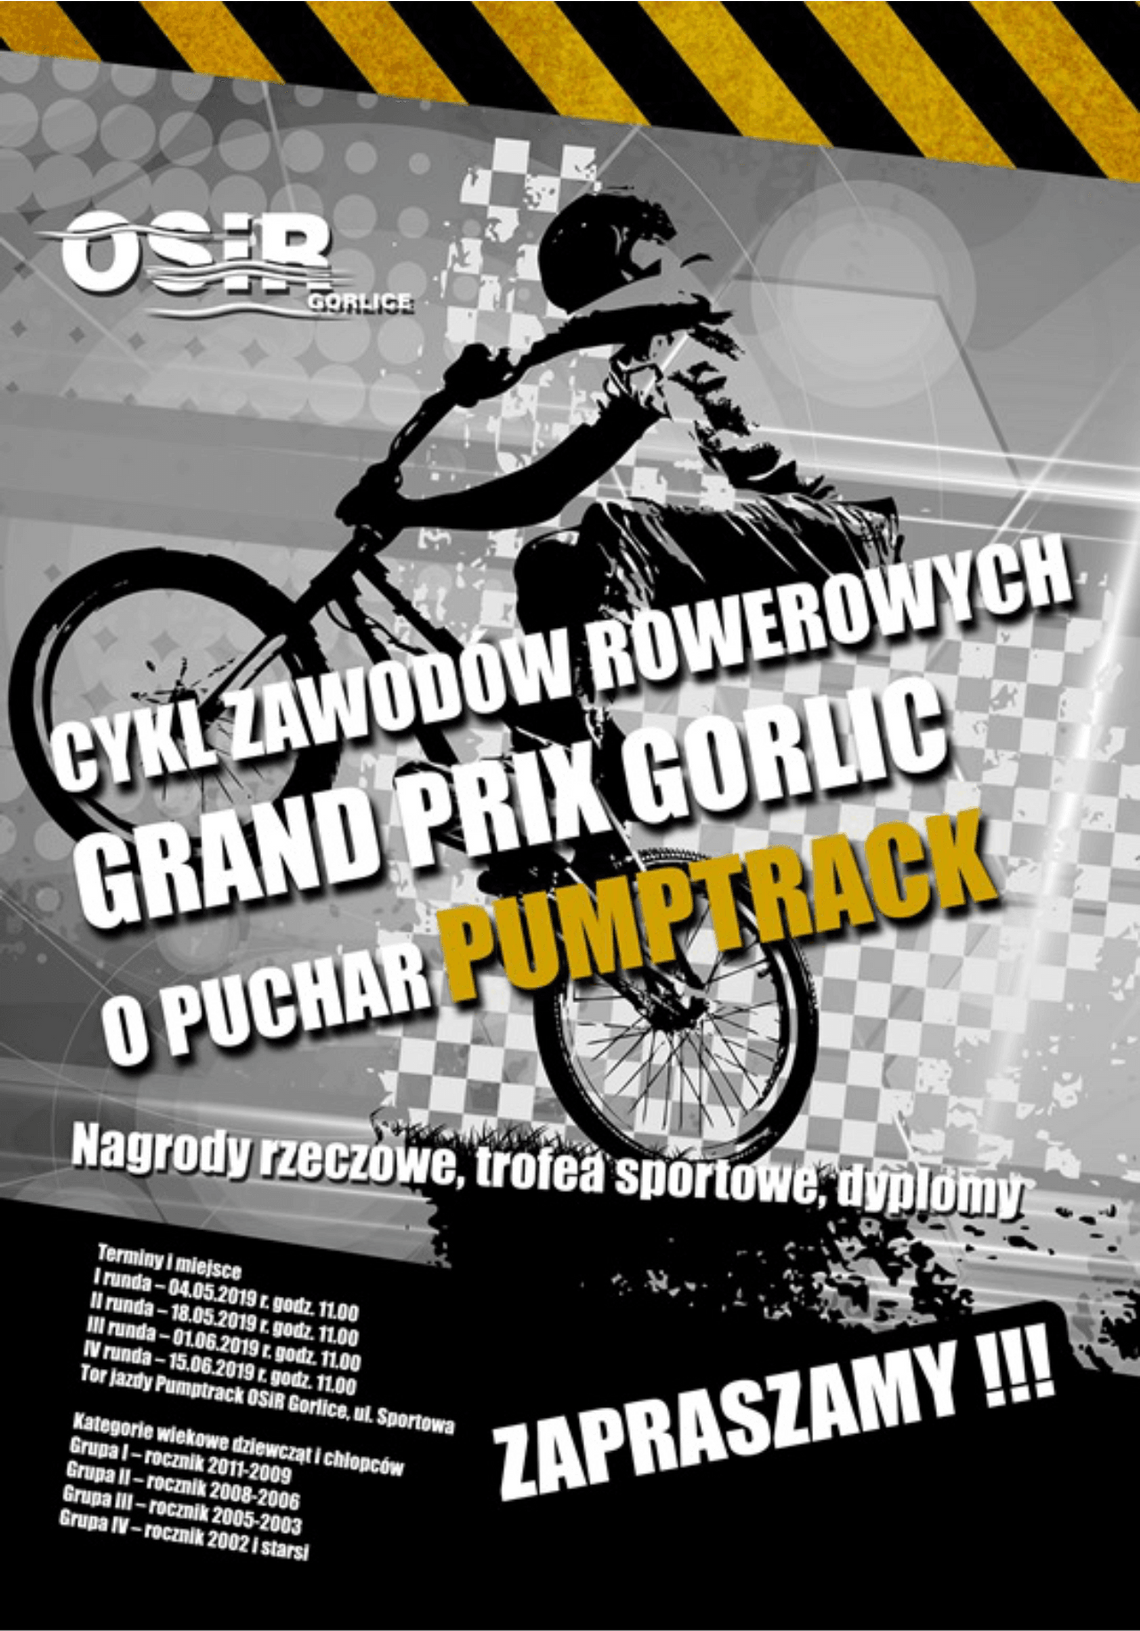 Grand Prix Gorlic o puchar Pumptrack!